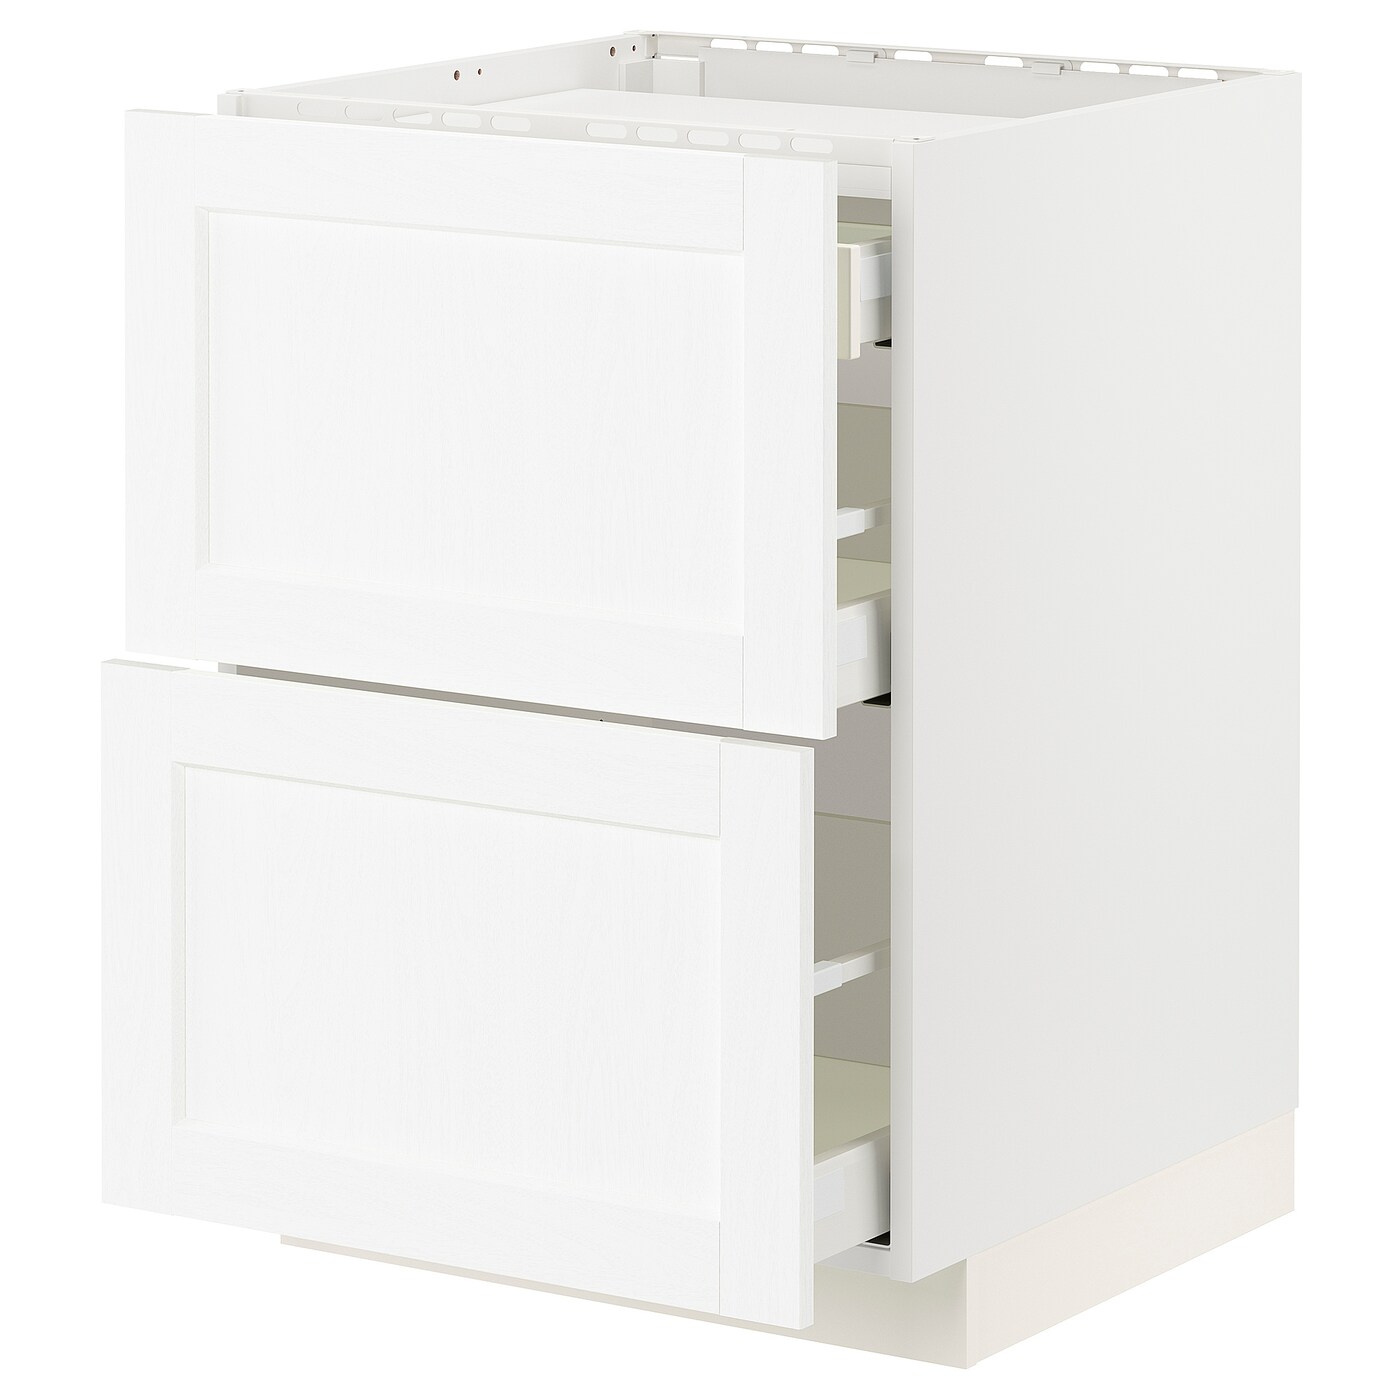 Напольный кухонный шкаф  - IKEA METOD MAXIMERA, 88x61,8x60см, белый, МЕТОД МАКСИМЕРА ИКЕА